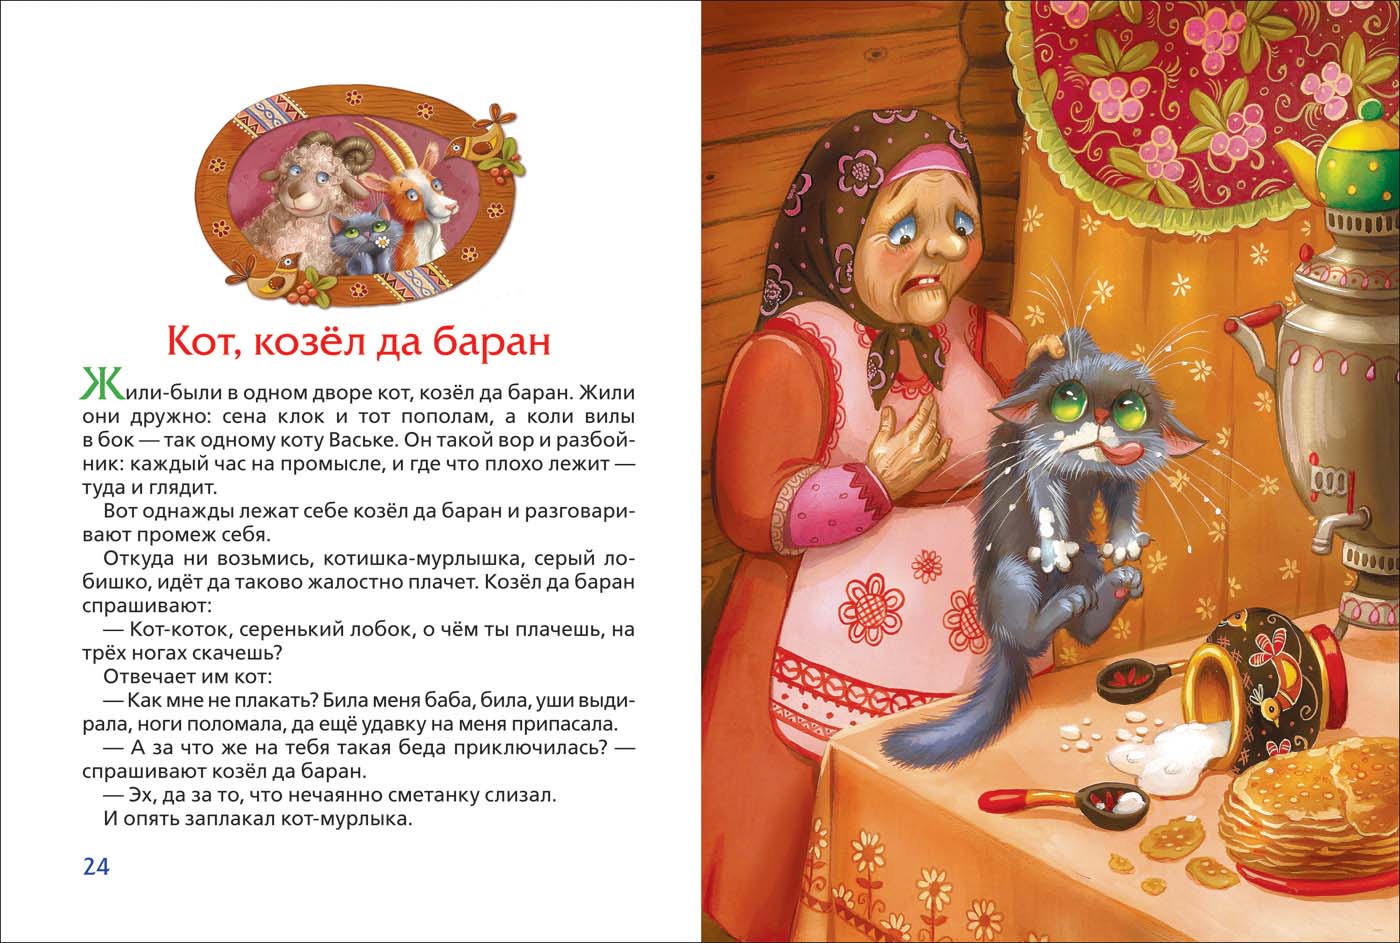 Книга из серии 3 любимых сказки – Петушок-золотой гребешок Капица О. И., Толстой А. Н. и Мельниченко М.А.   